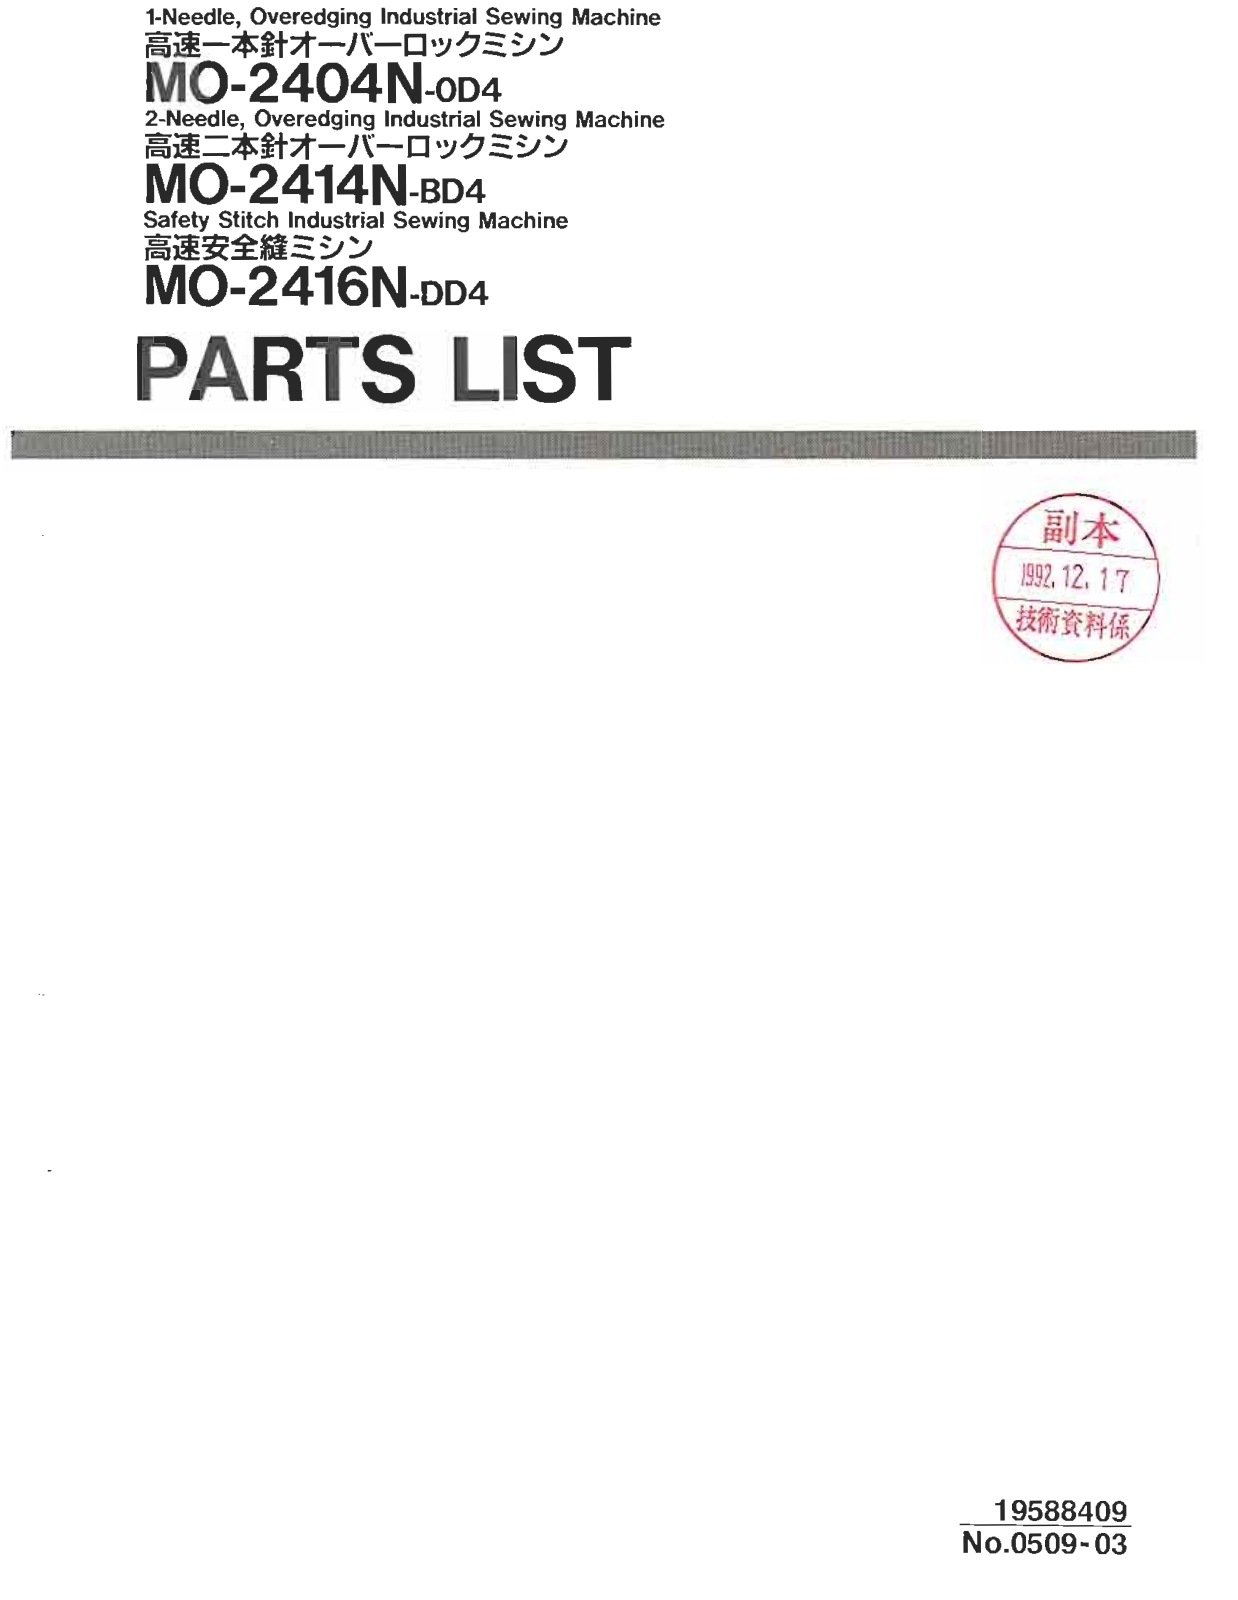 Juki MO-2404N-OD4, MO-2414N-BD4, MO-2416N-DD4 Parts List